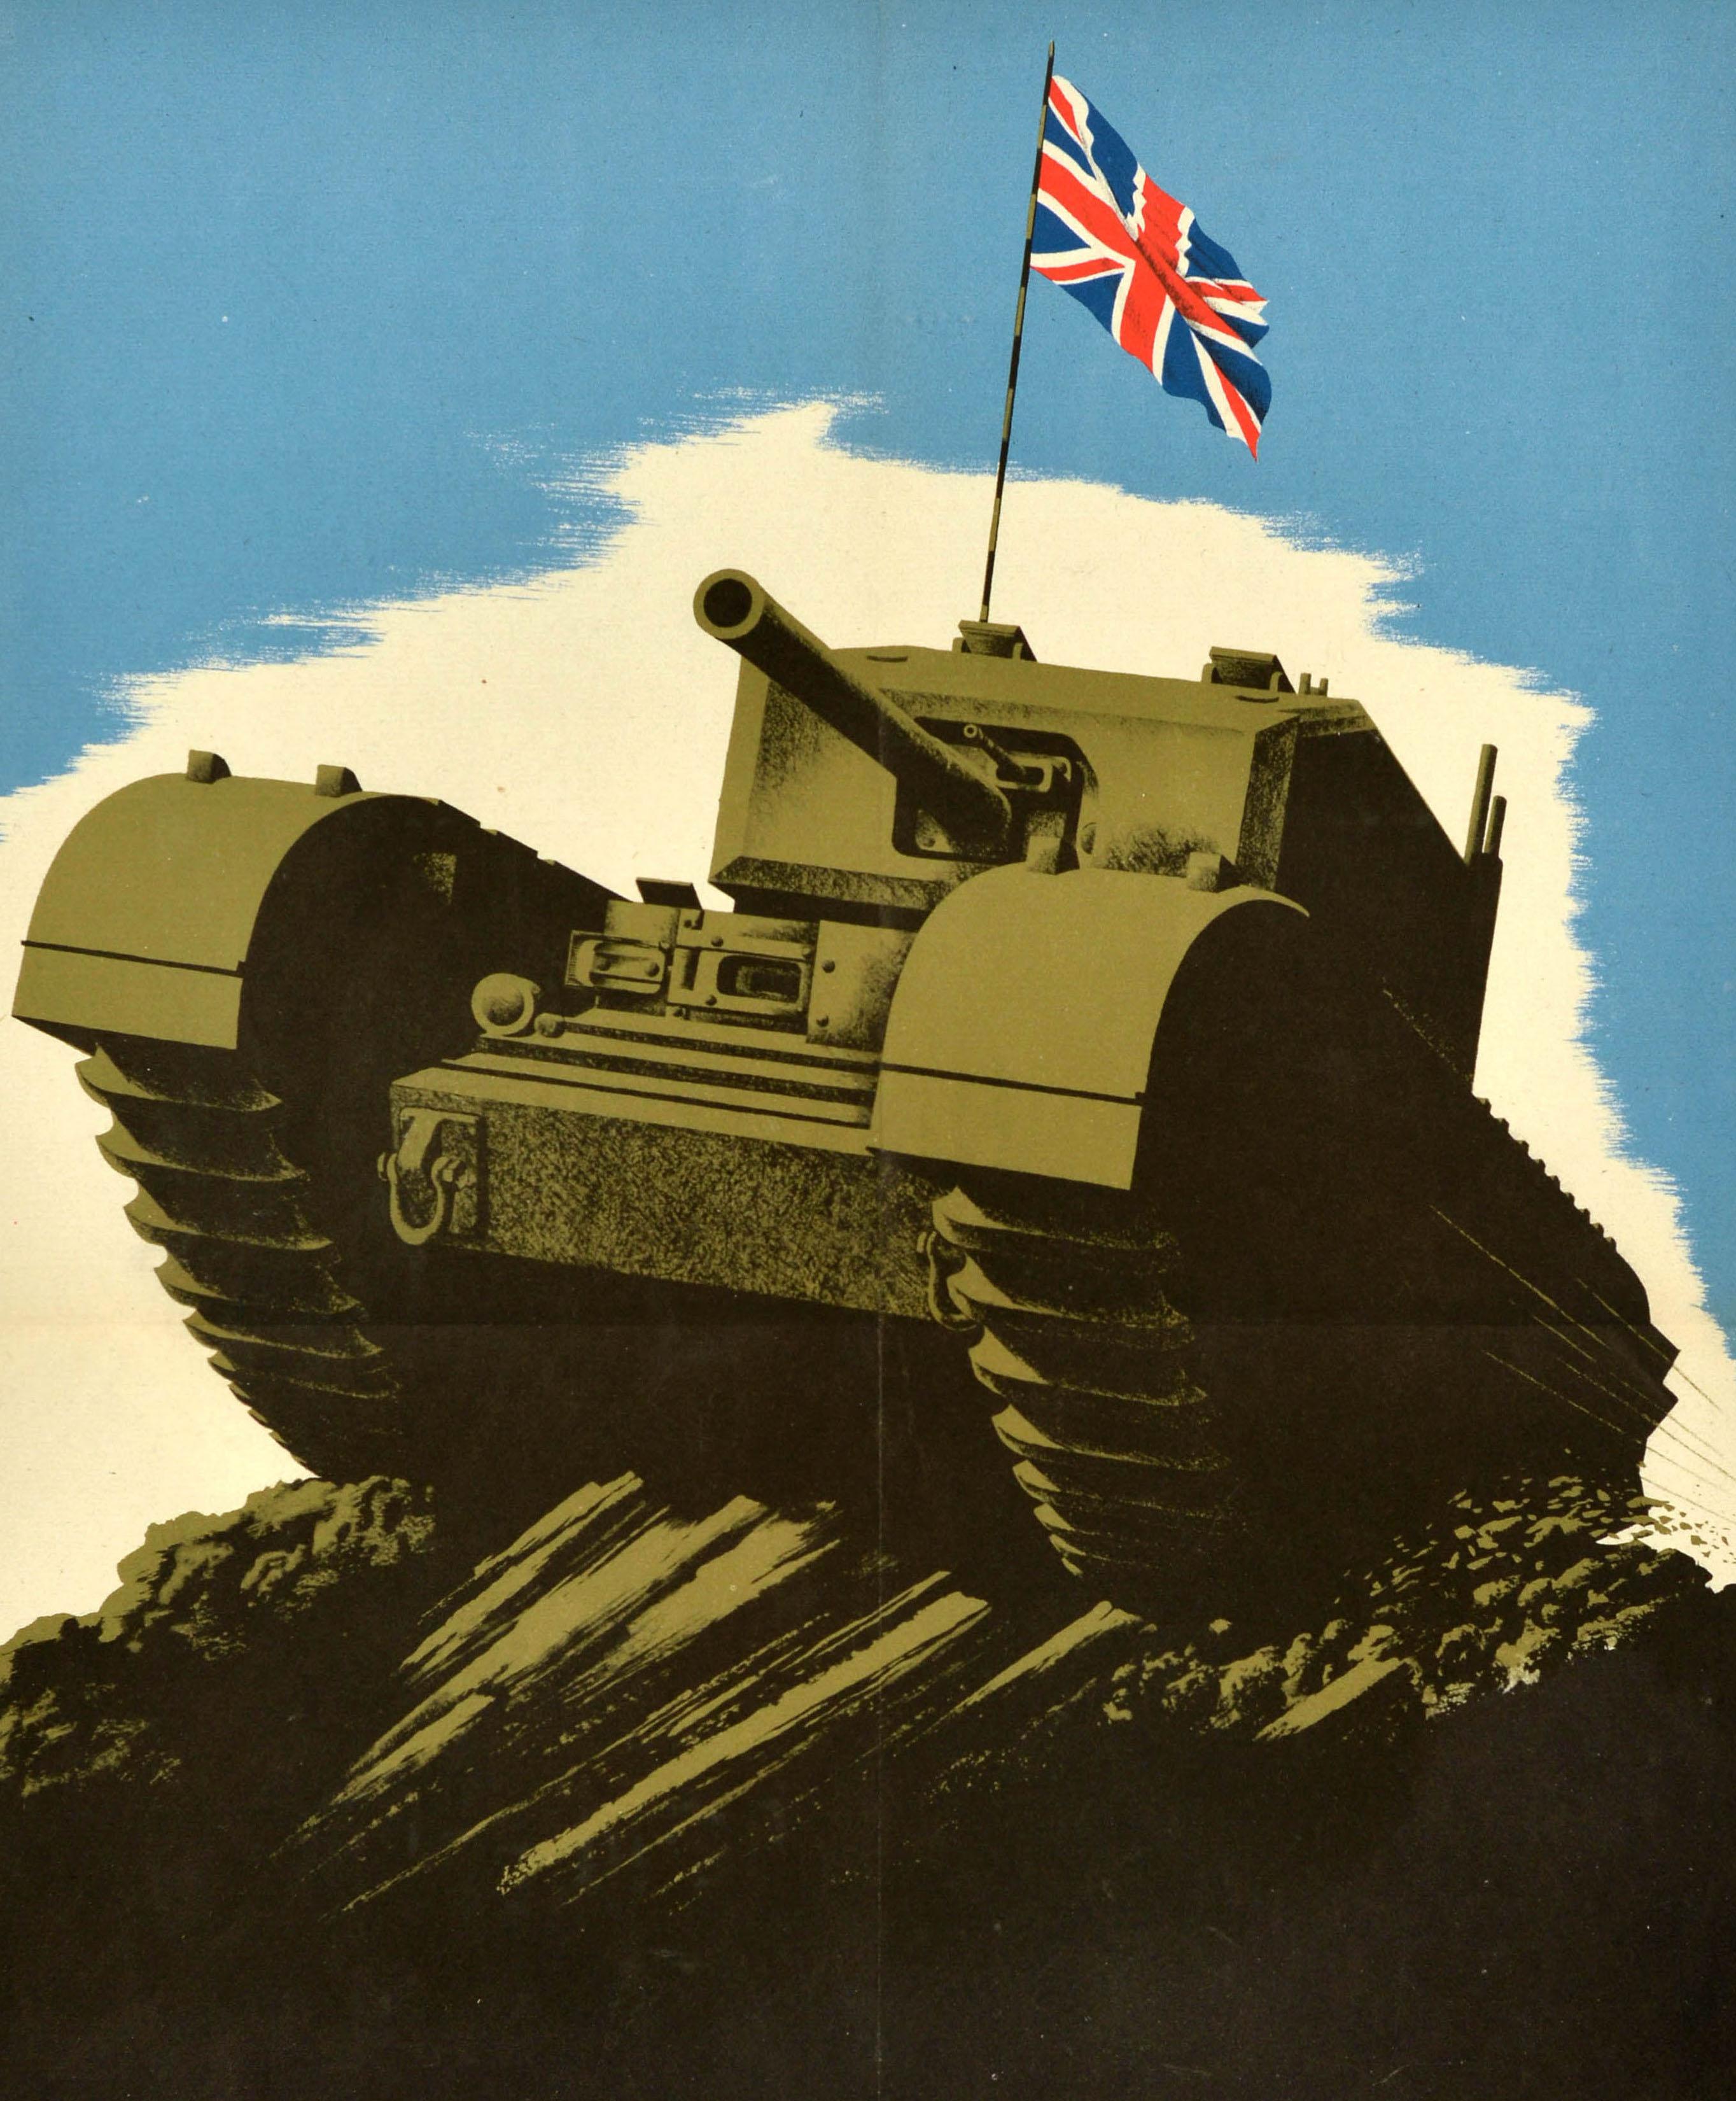 Originalplakat aus dem Zweiten Weltkrieg mit der Illustration eines Militärpanzers, der mit hoher Geschwindigkeit über einen Hügel fährt, wobei die Flagge des Vereinigten Königreichs, der Union Jack, vor dem blauen Himmel weht. Auf dem schwarzen